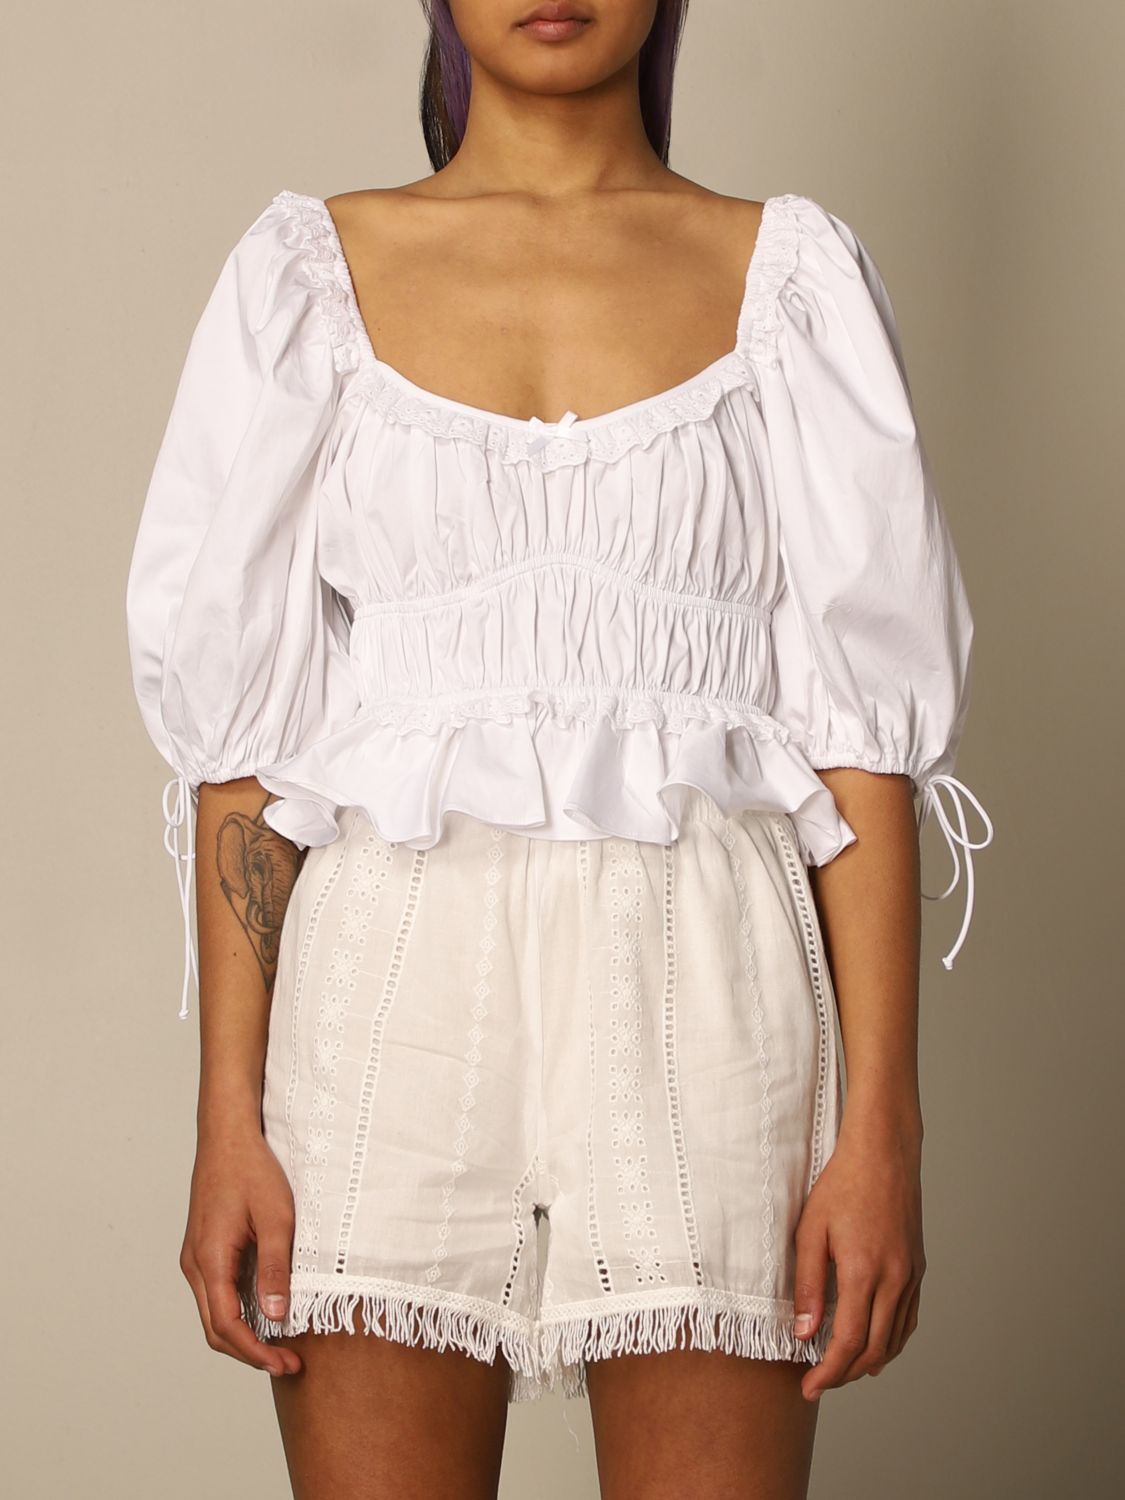 FOR LOVE & LEMONS: Shirt women - White | FOR LOVE & LEMONS top ...